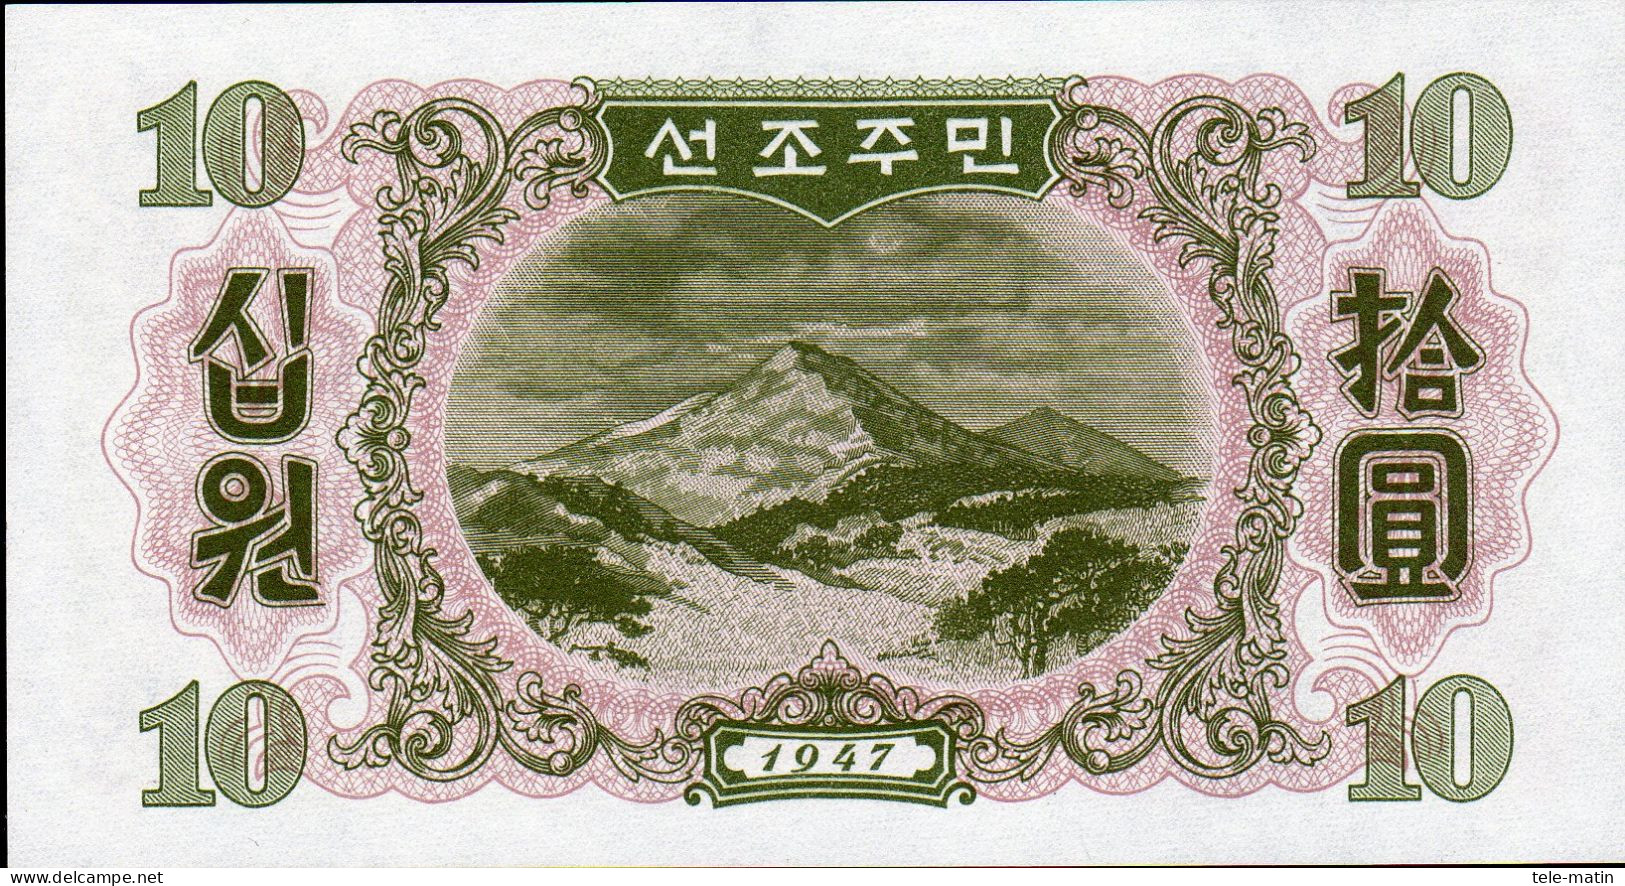 25 billets de la Corée du nord